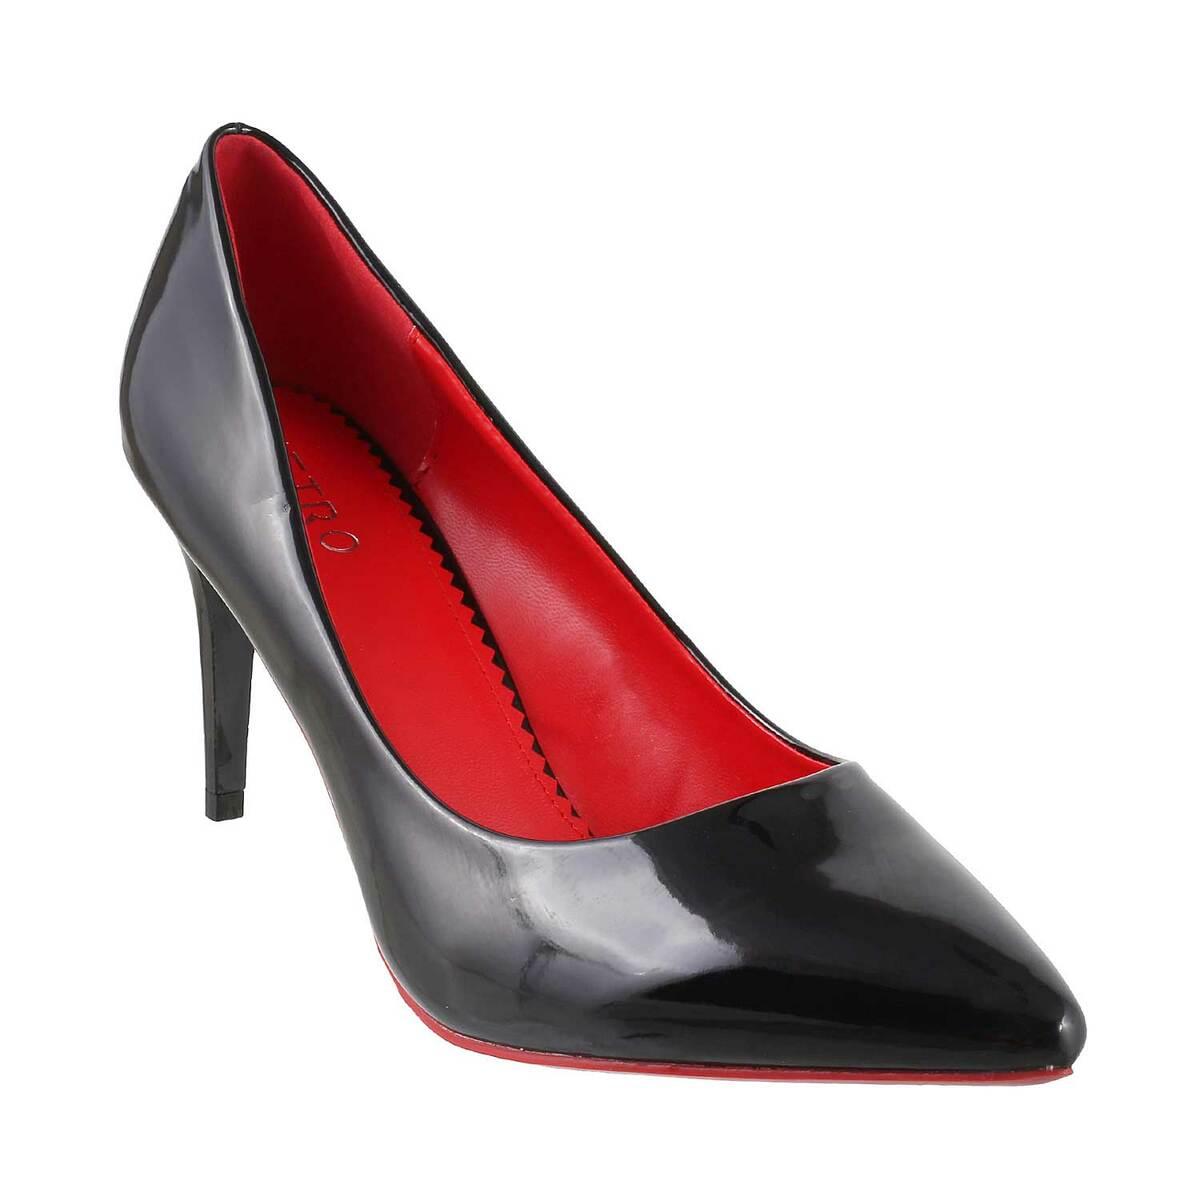 Red Suede Heels - Buy Red Suede Heels online in India